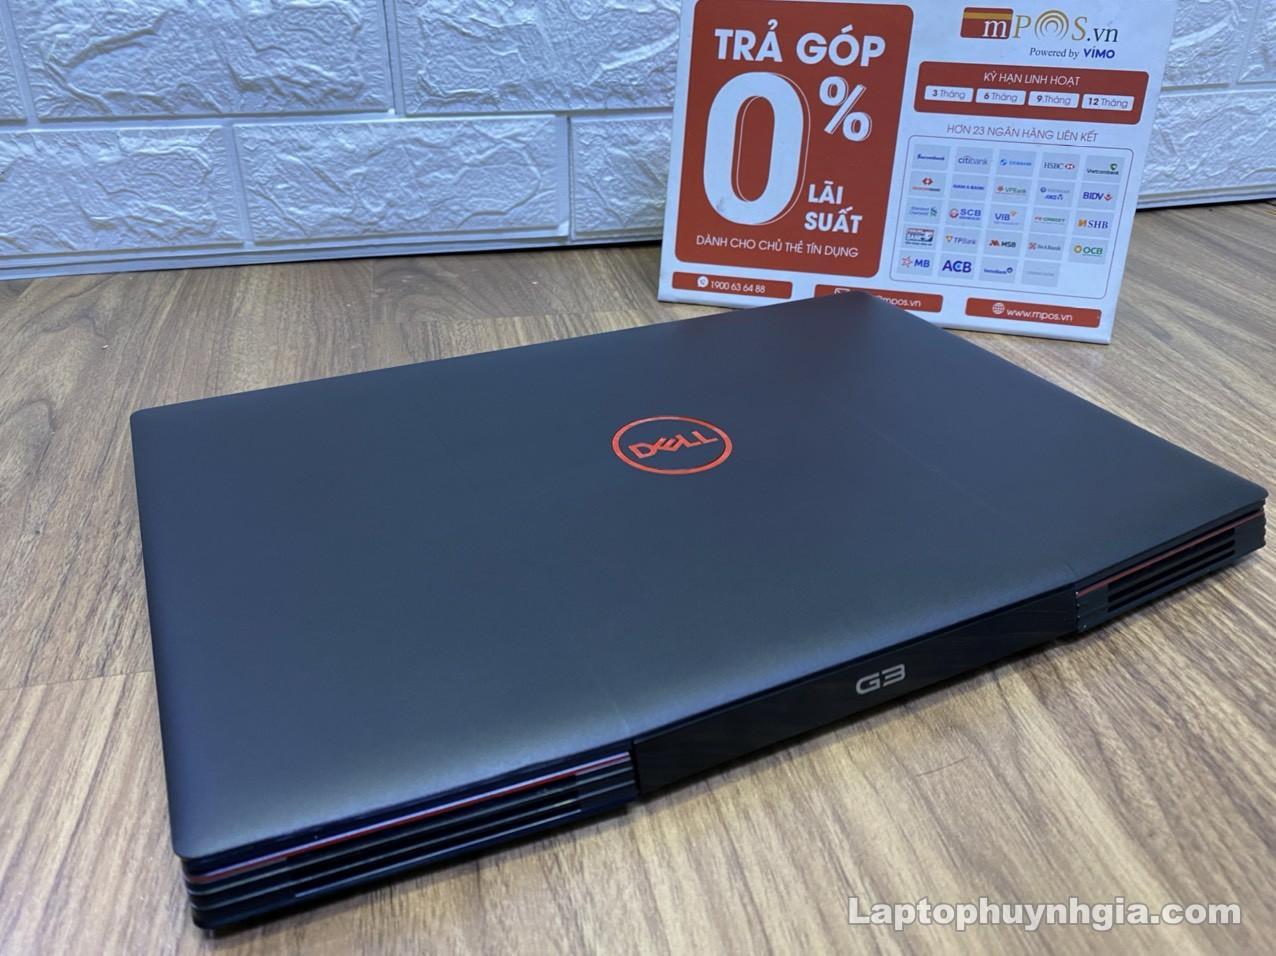 Laptop Cũ Bình Dương - dell g3 3500 i5 10300h 8g nvme 512g nvidia gtx1650ti laptophuynhgia